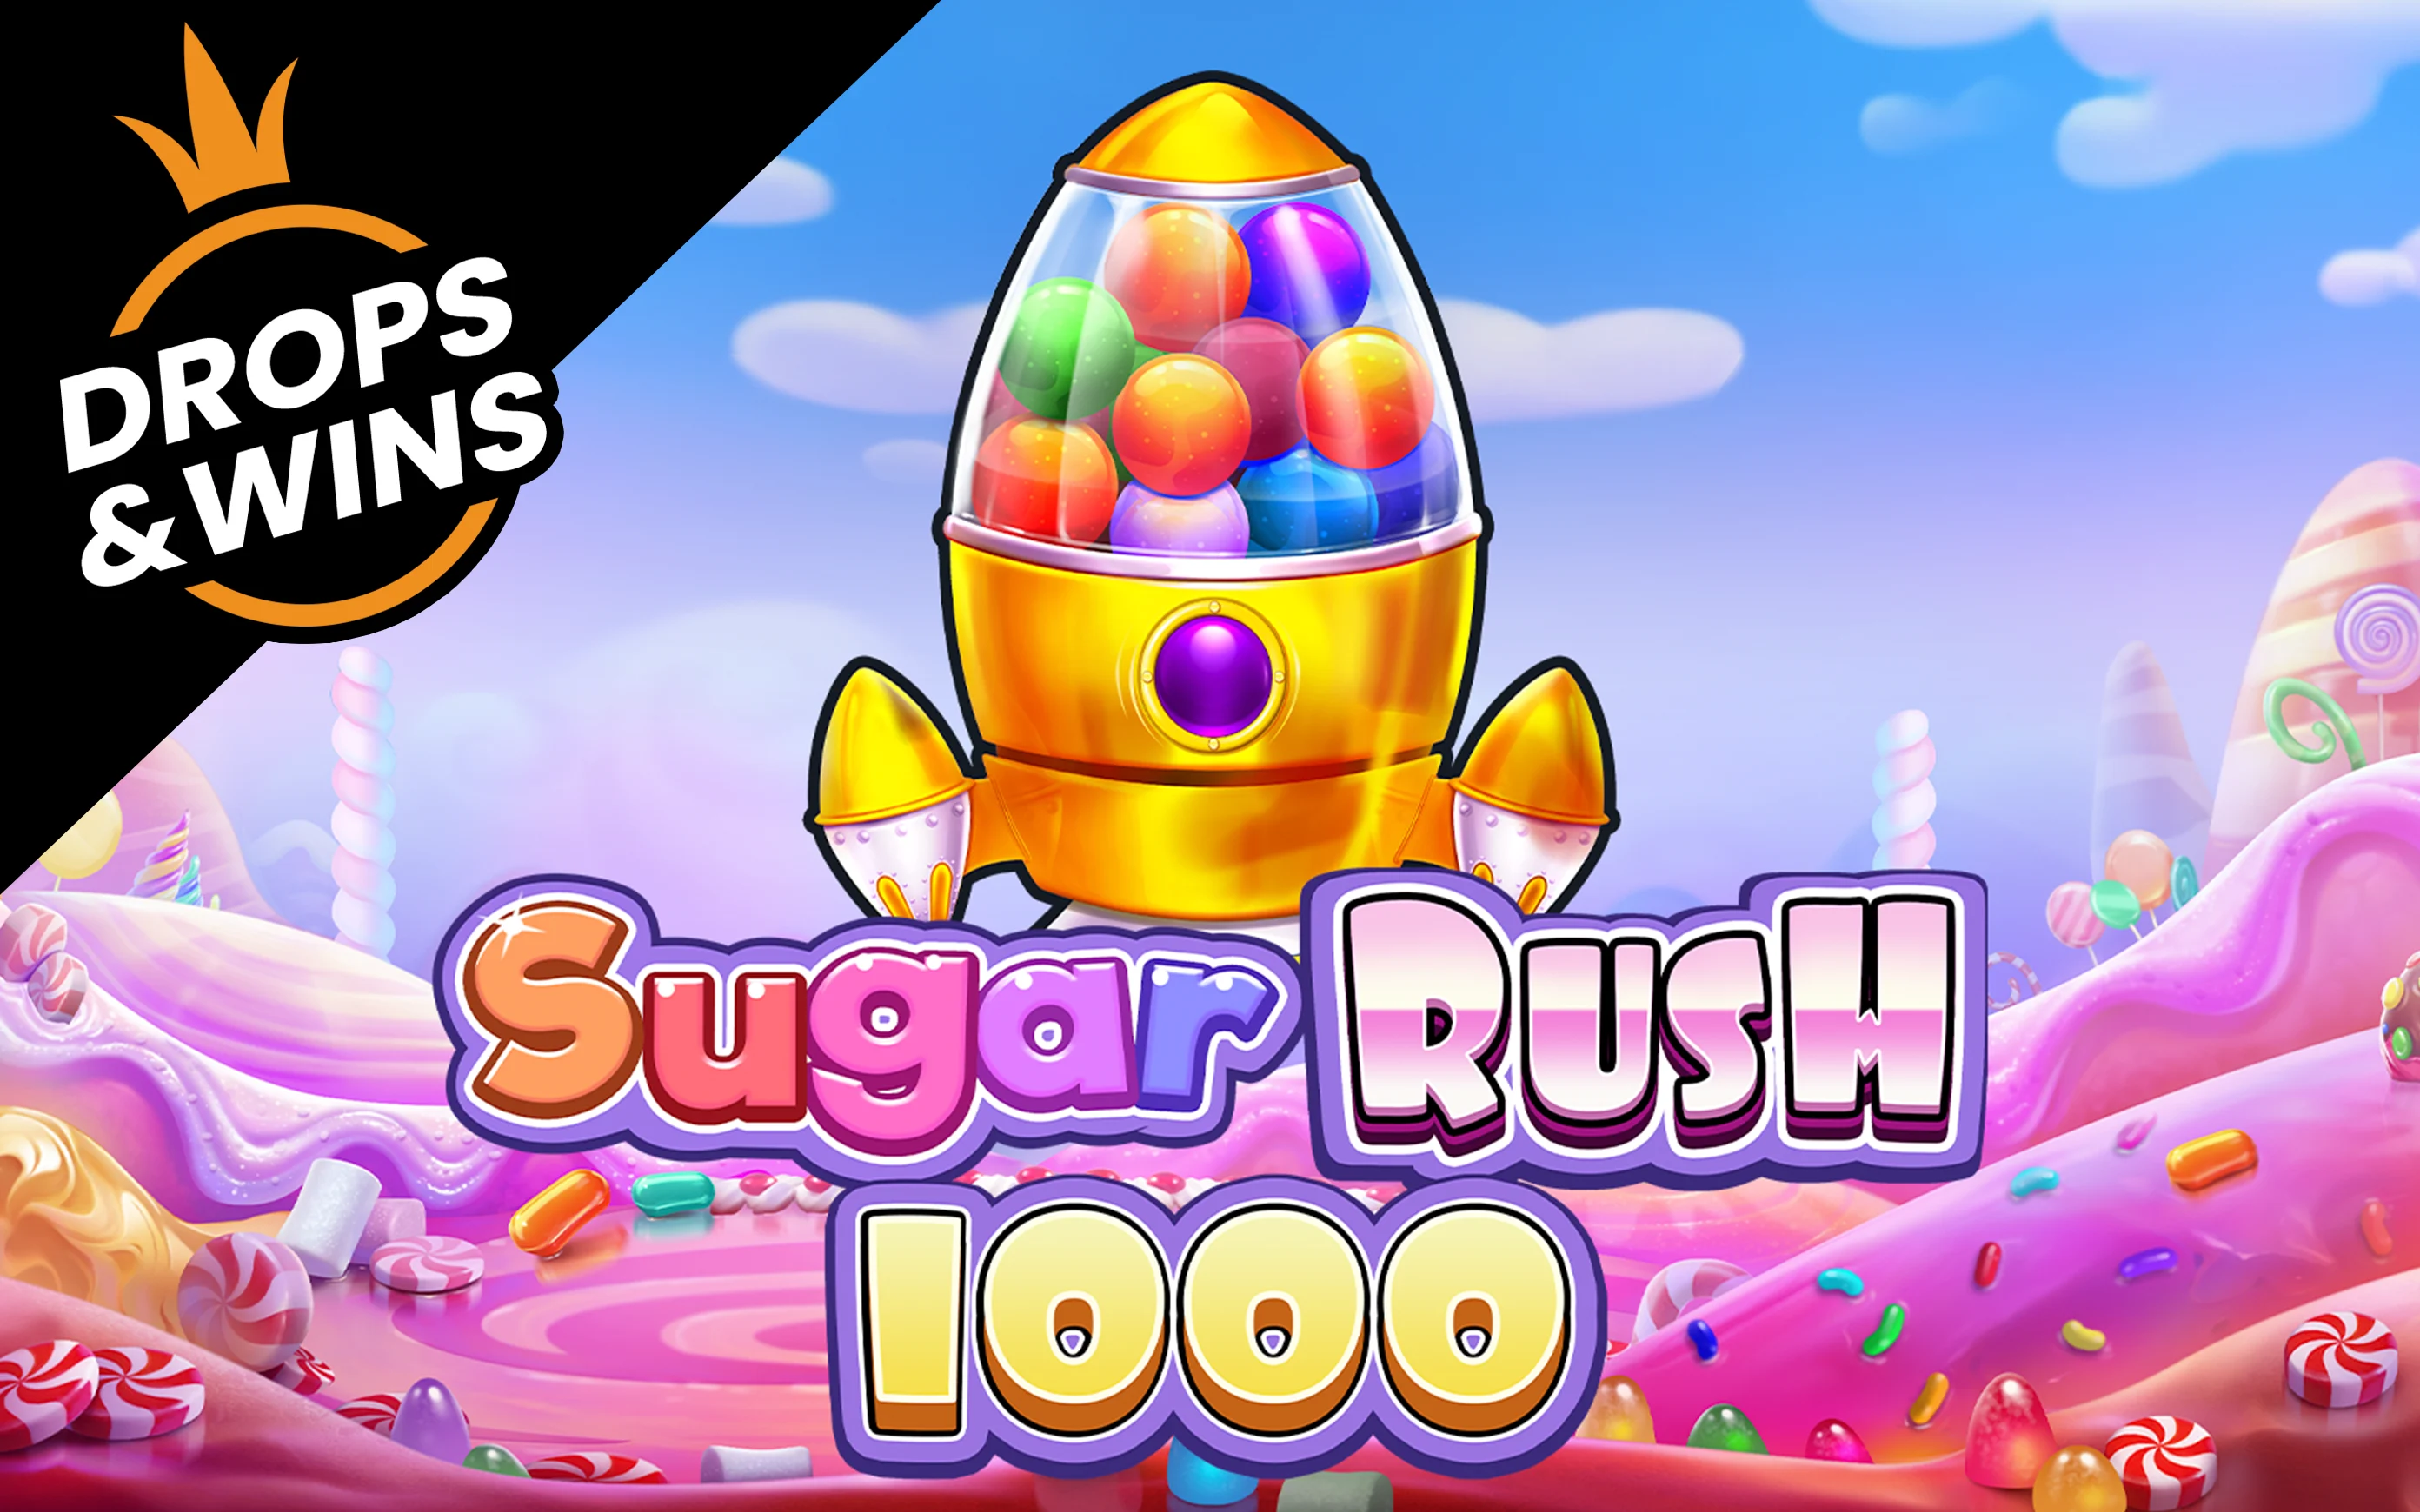 Play Sugar Rush 1000 on Starcasino.be online casino